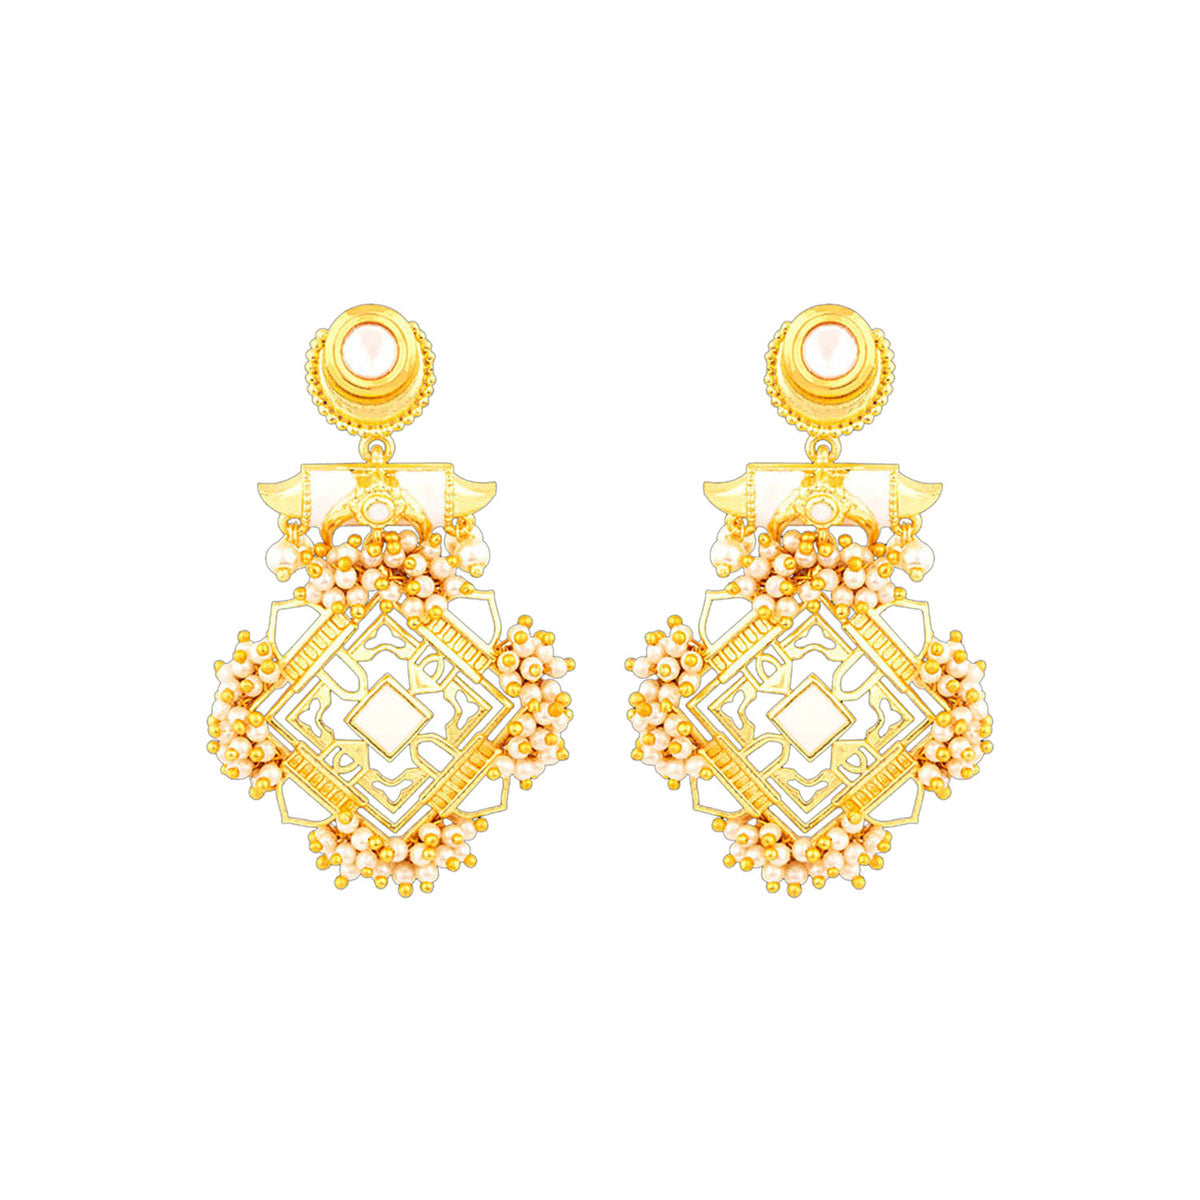 Everyday Elegance Diamond Stud Earrings in Solid 18K Gold - VegaJewelryUS